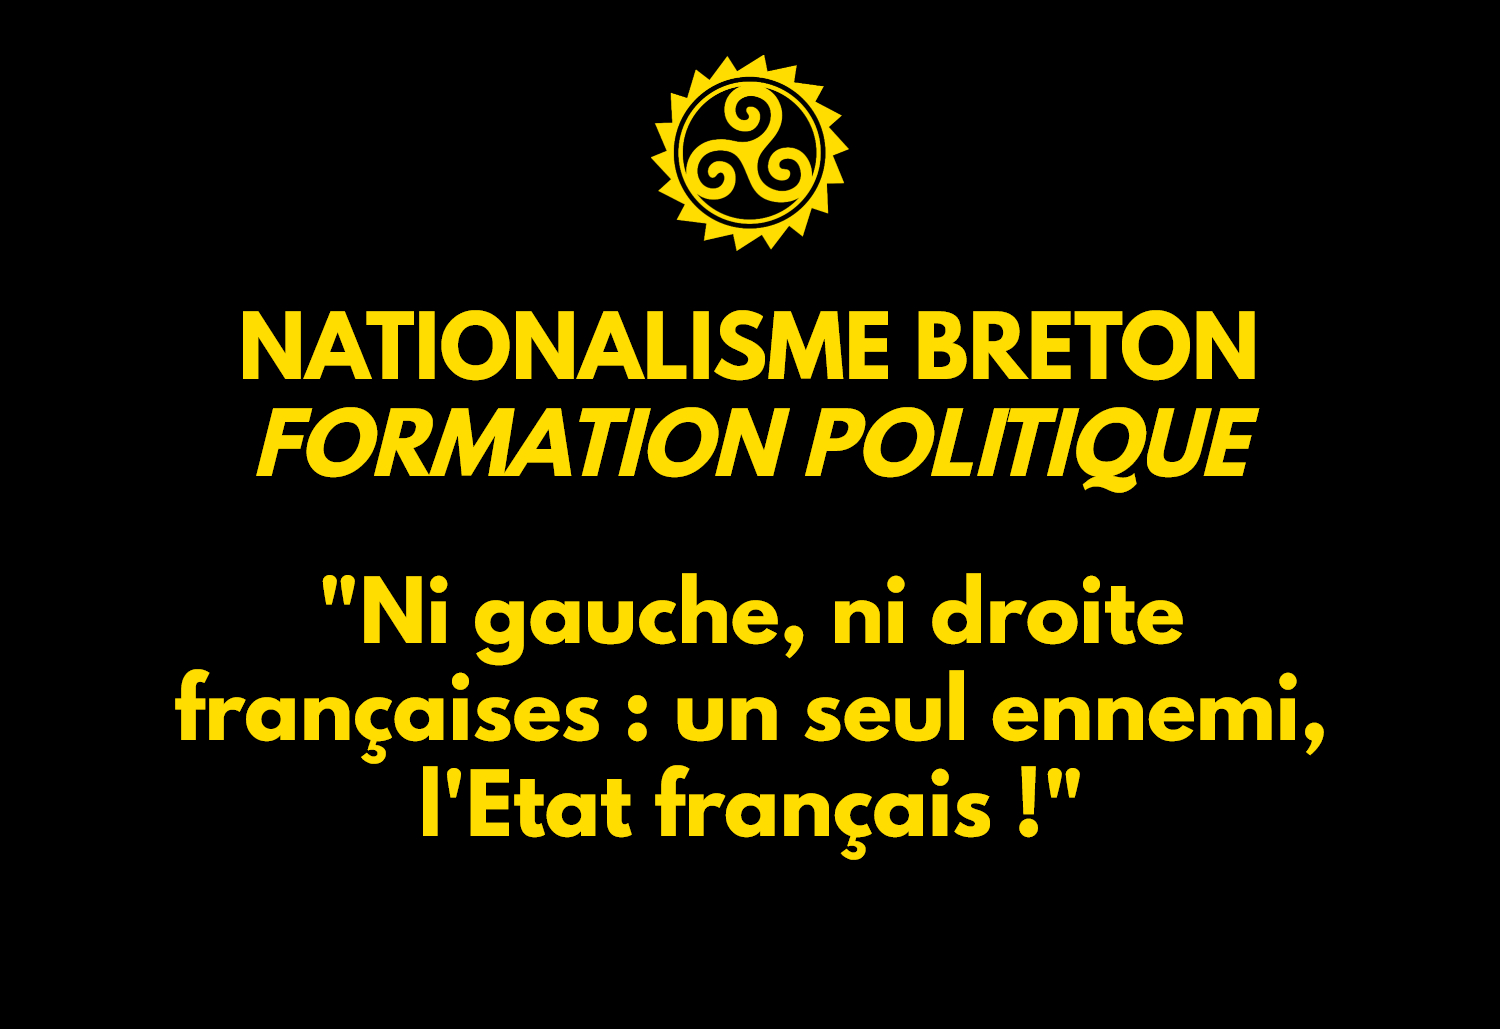 [PODCAST] Formation politique : “Ni gauche, ni droite françaises, un seul l’ennemi : l’Etat français !”